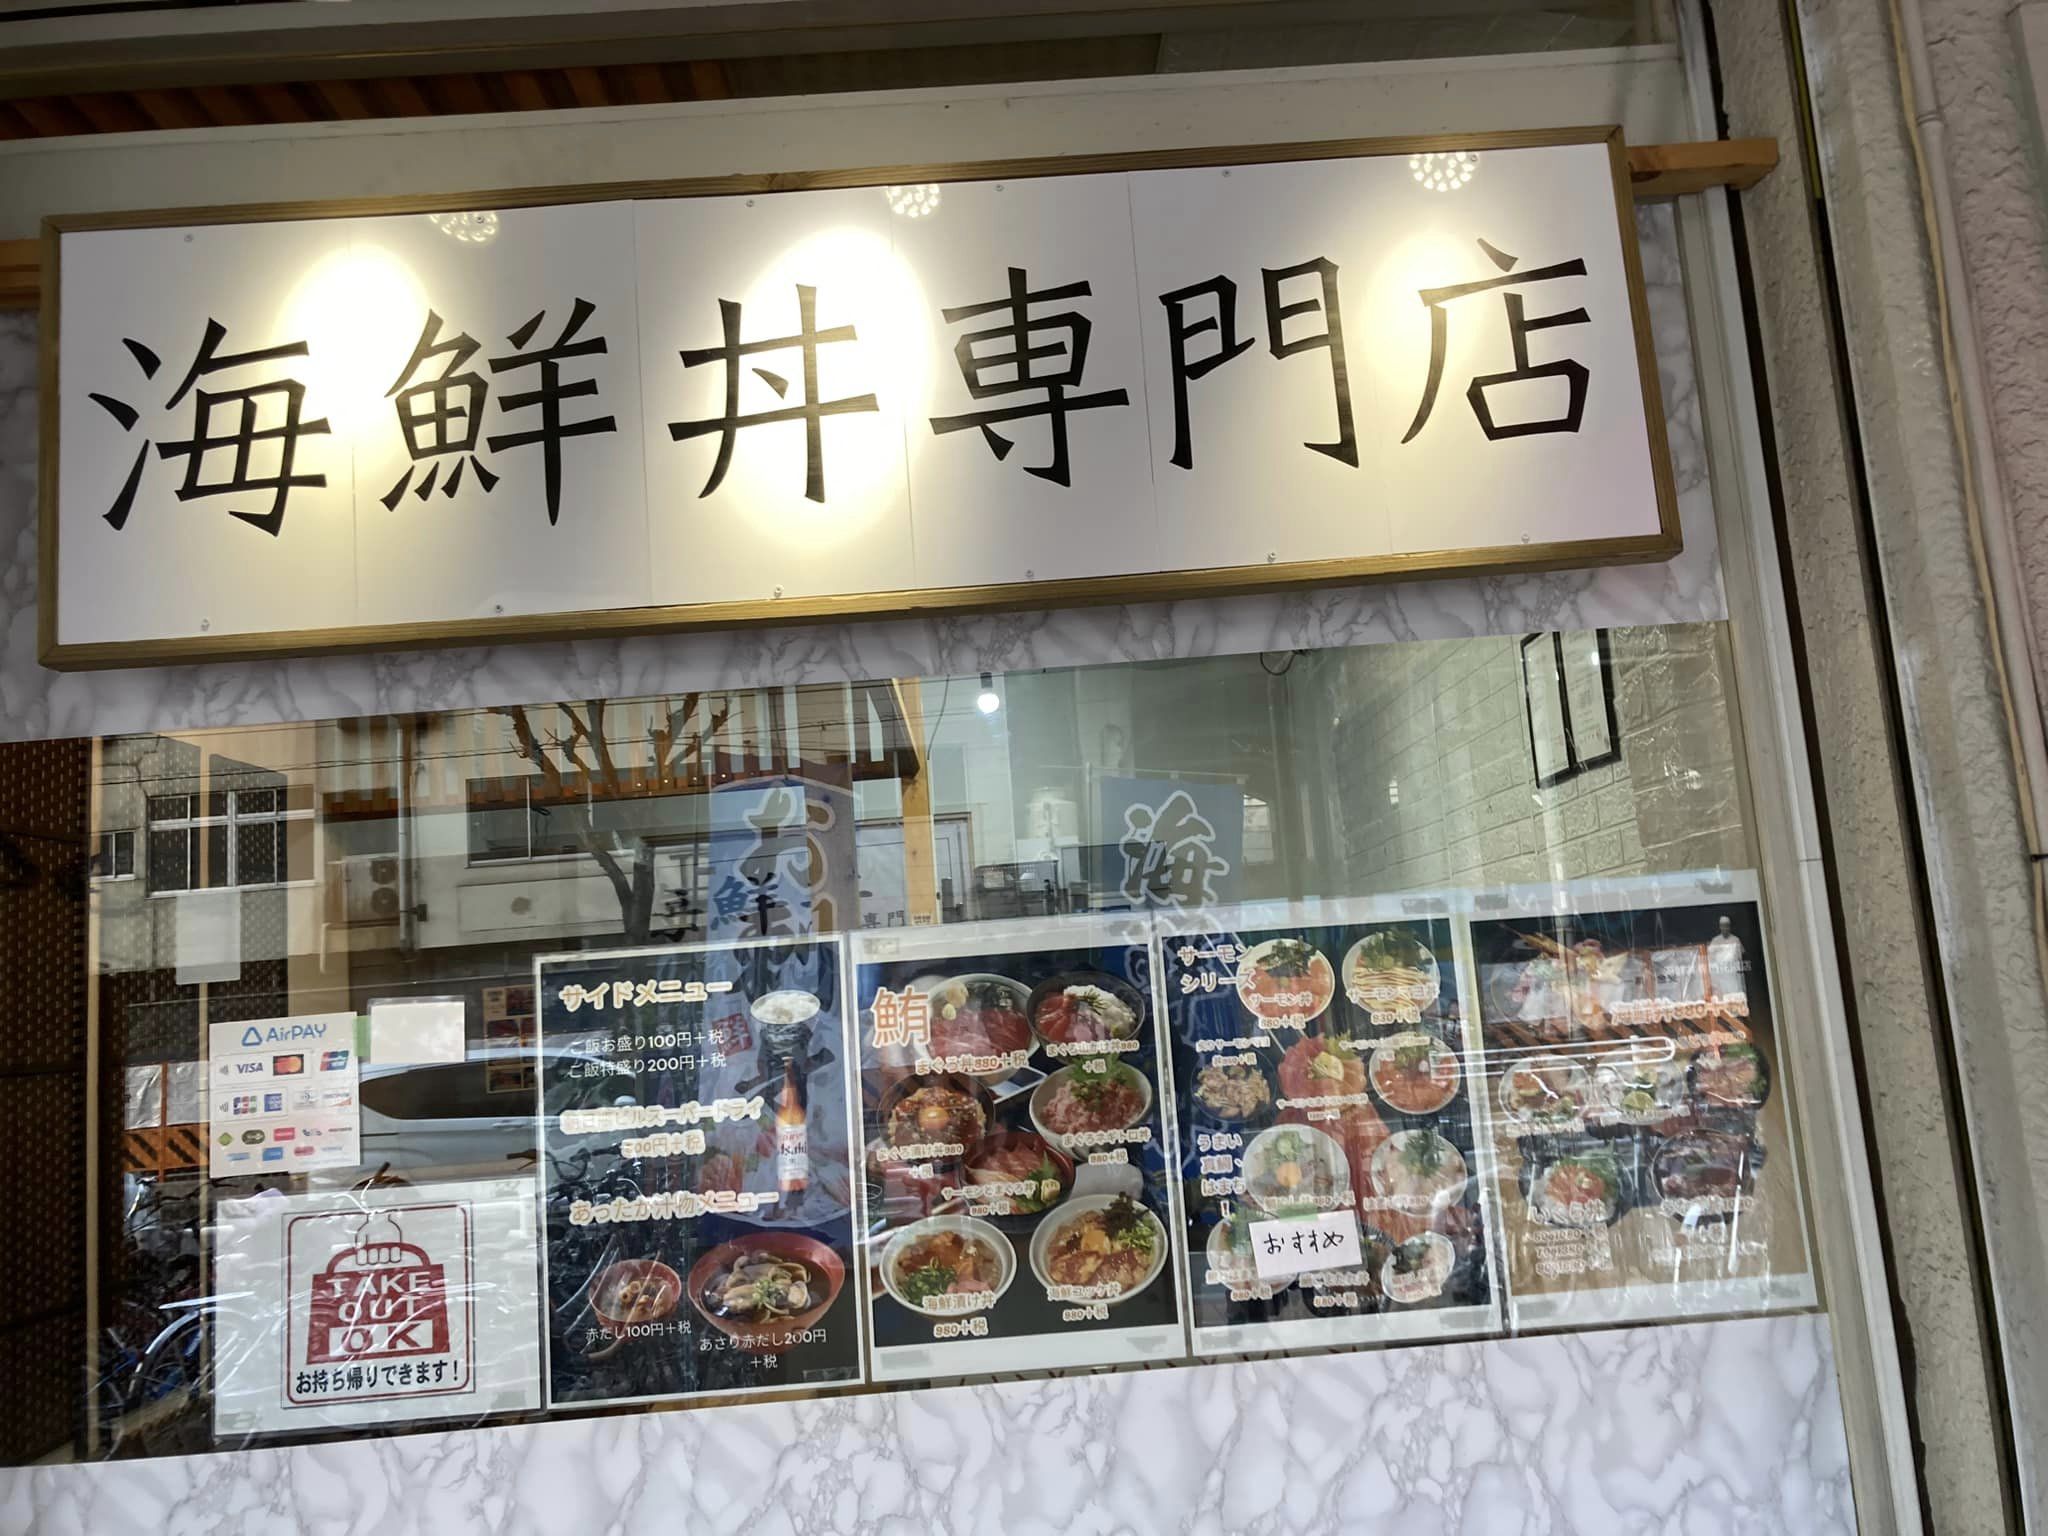 海鮮丼屋さんがリニューアルオープン